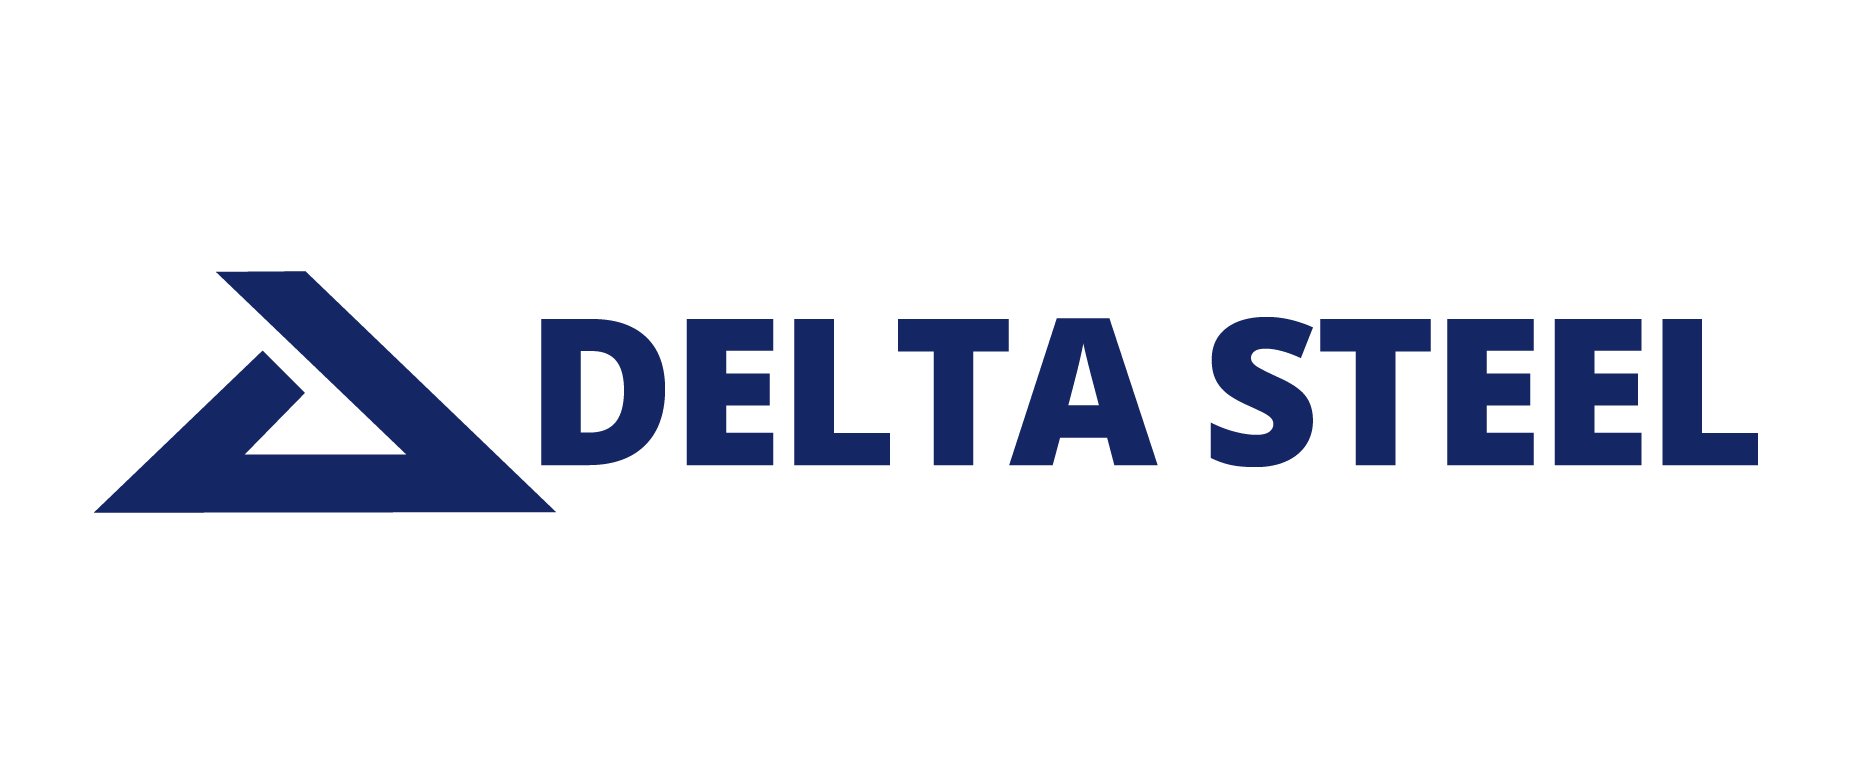 Deltasteel logo side noinc